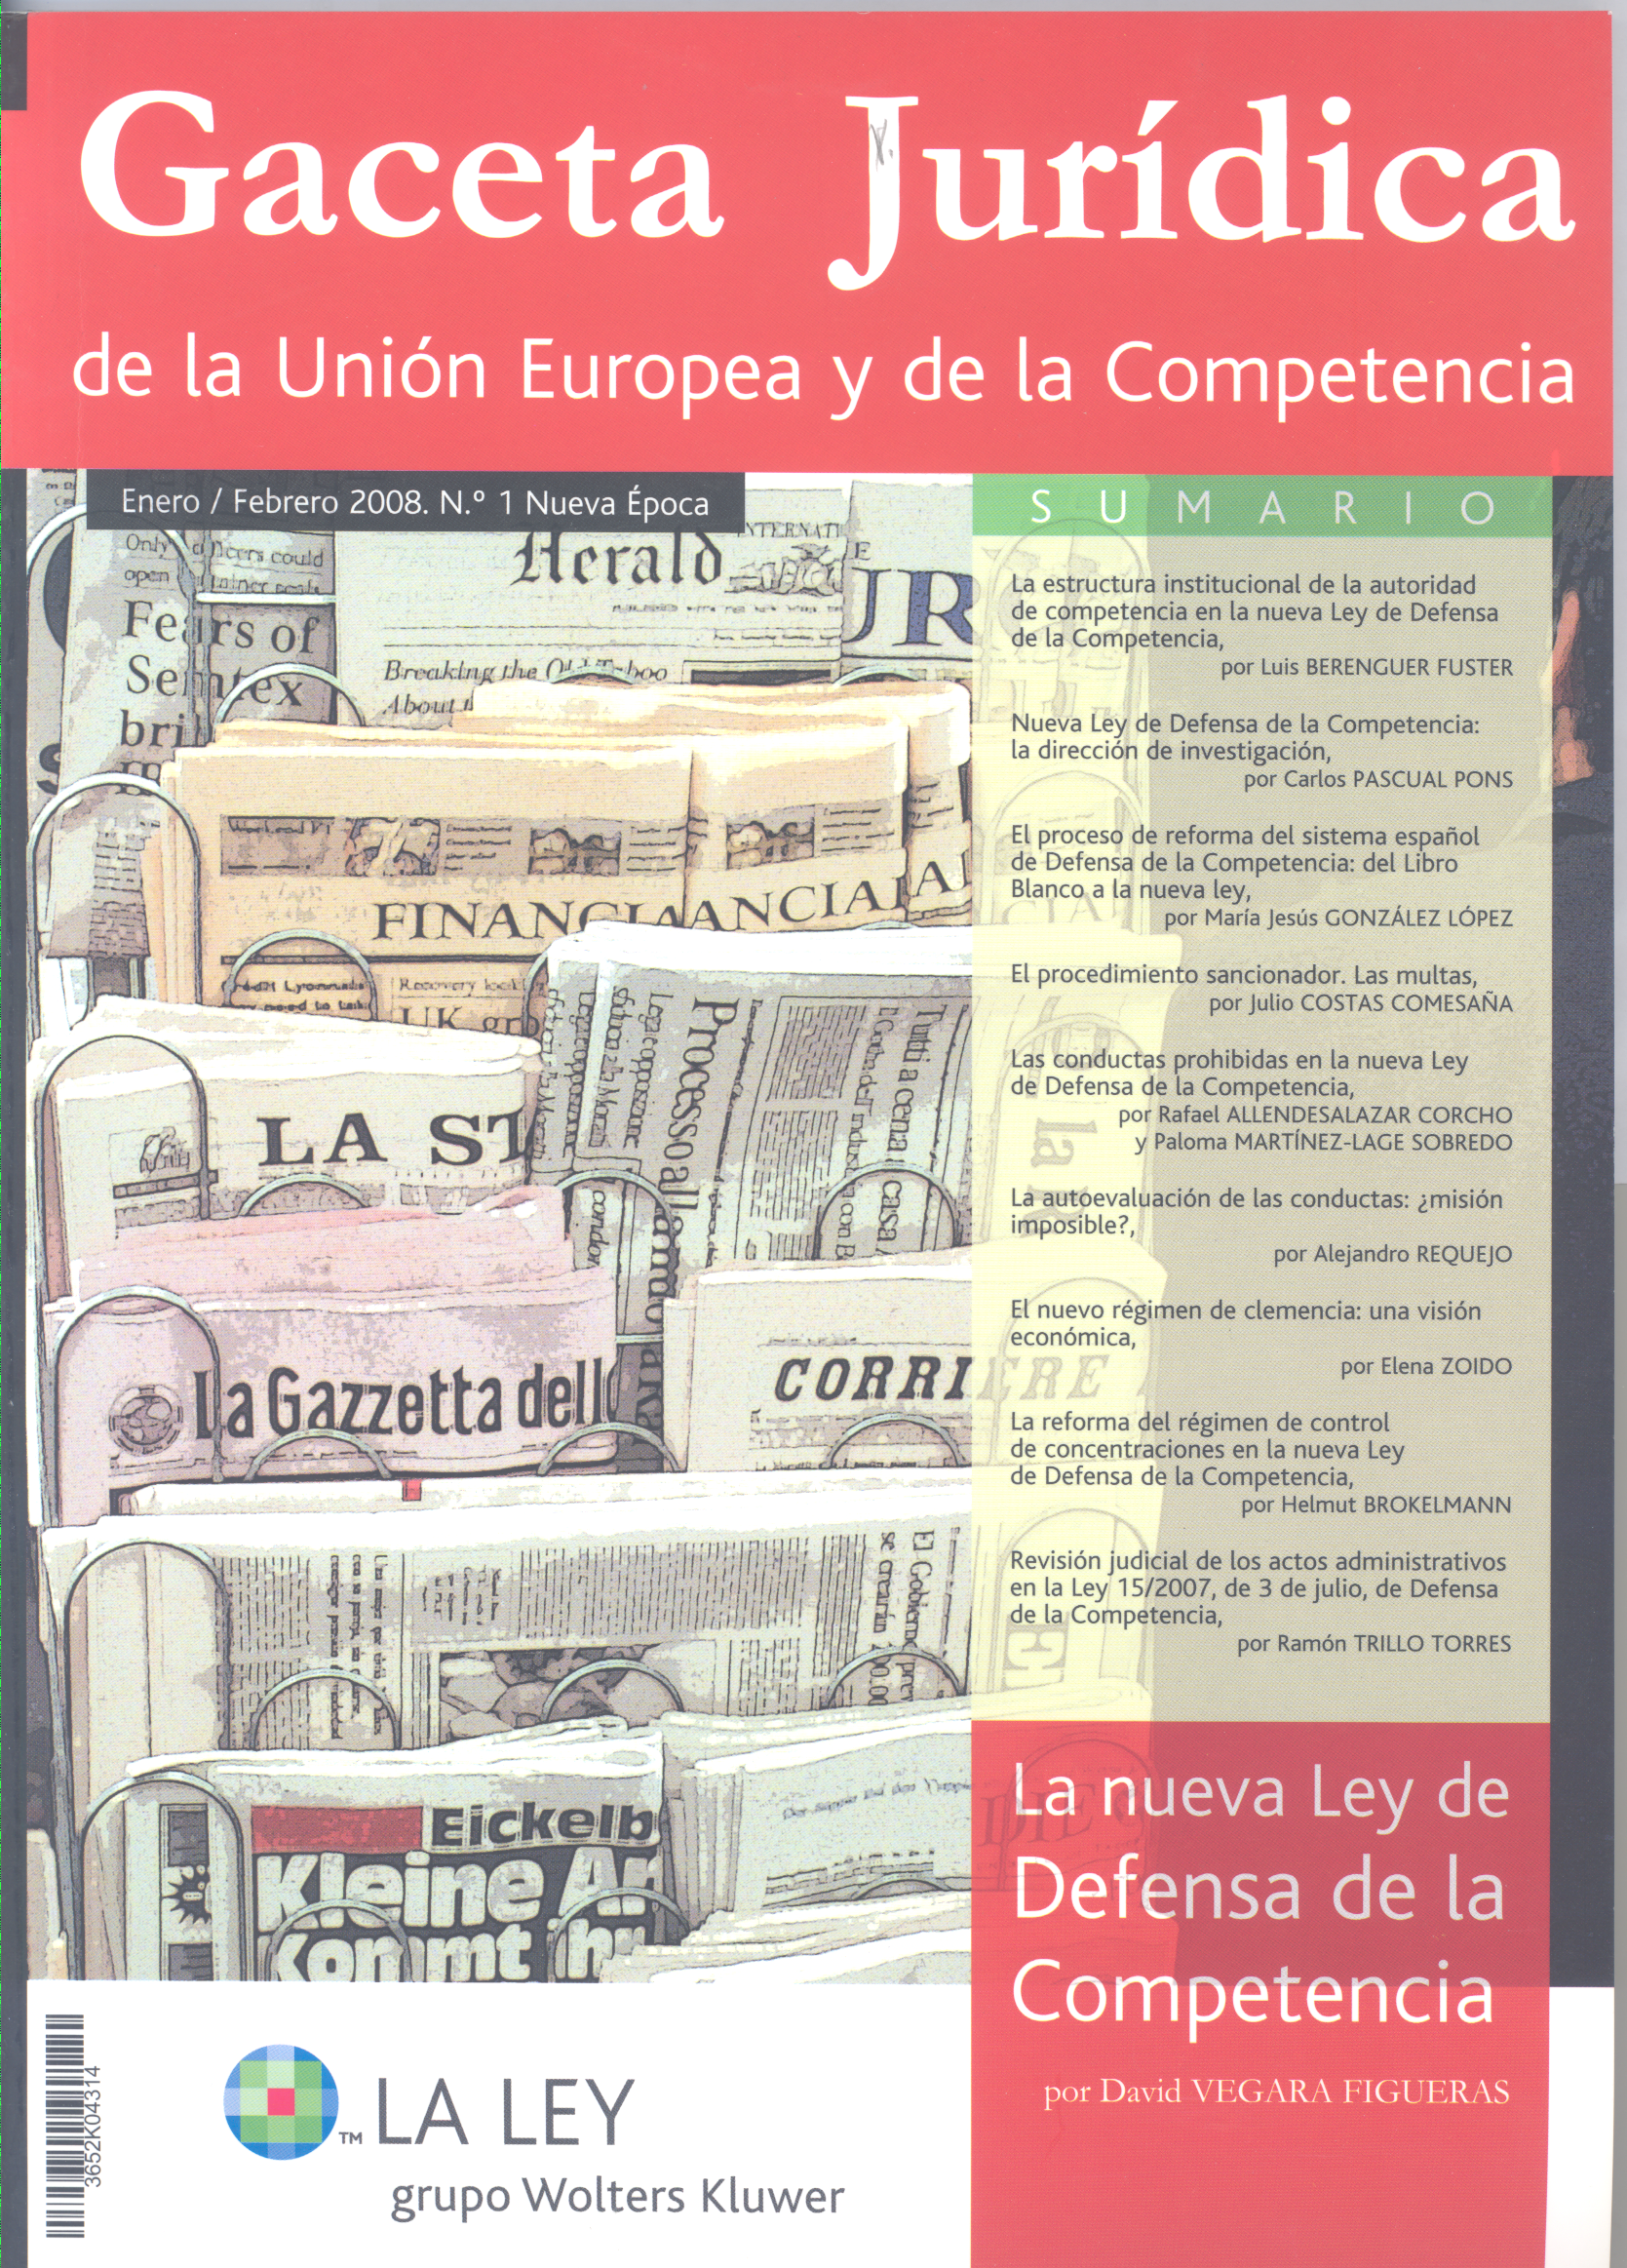 El proceso de reforma del sistema español de Defensa de la Competencia: del Libro Blanco a la nueva Ley